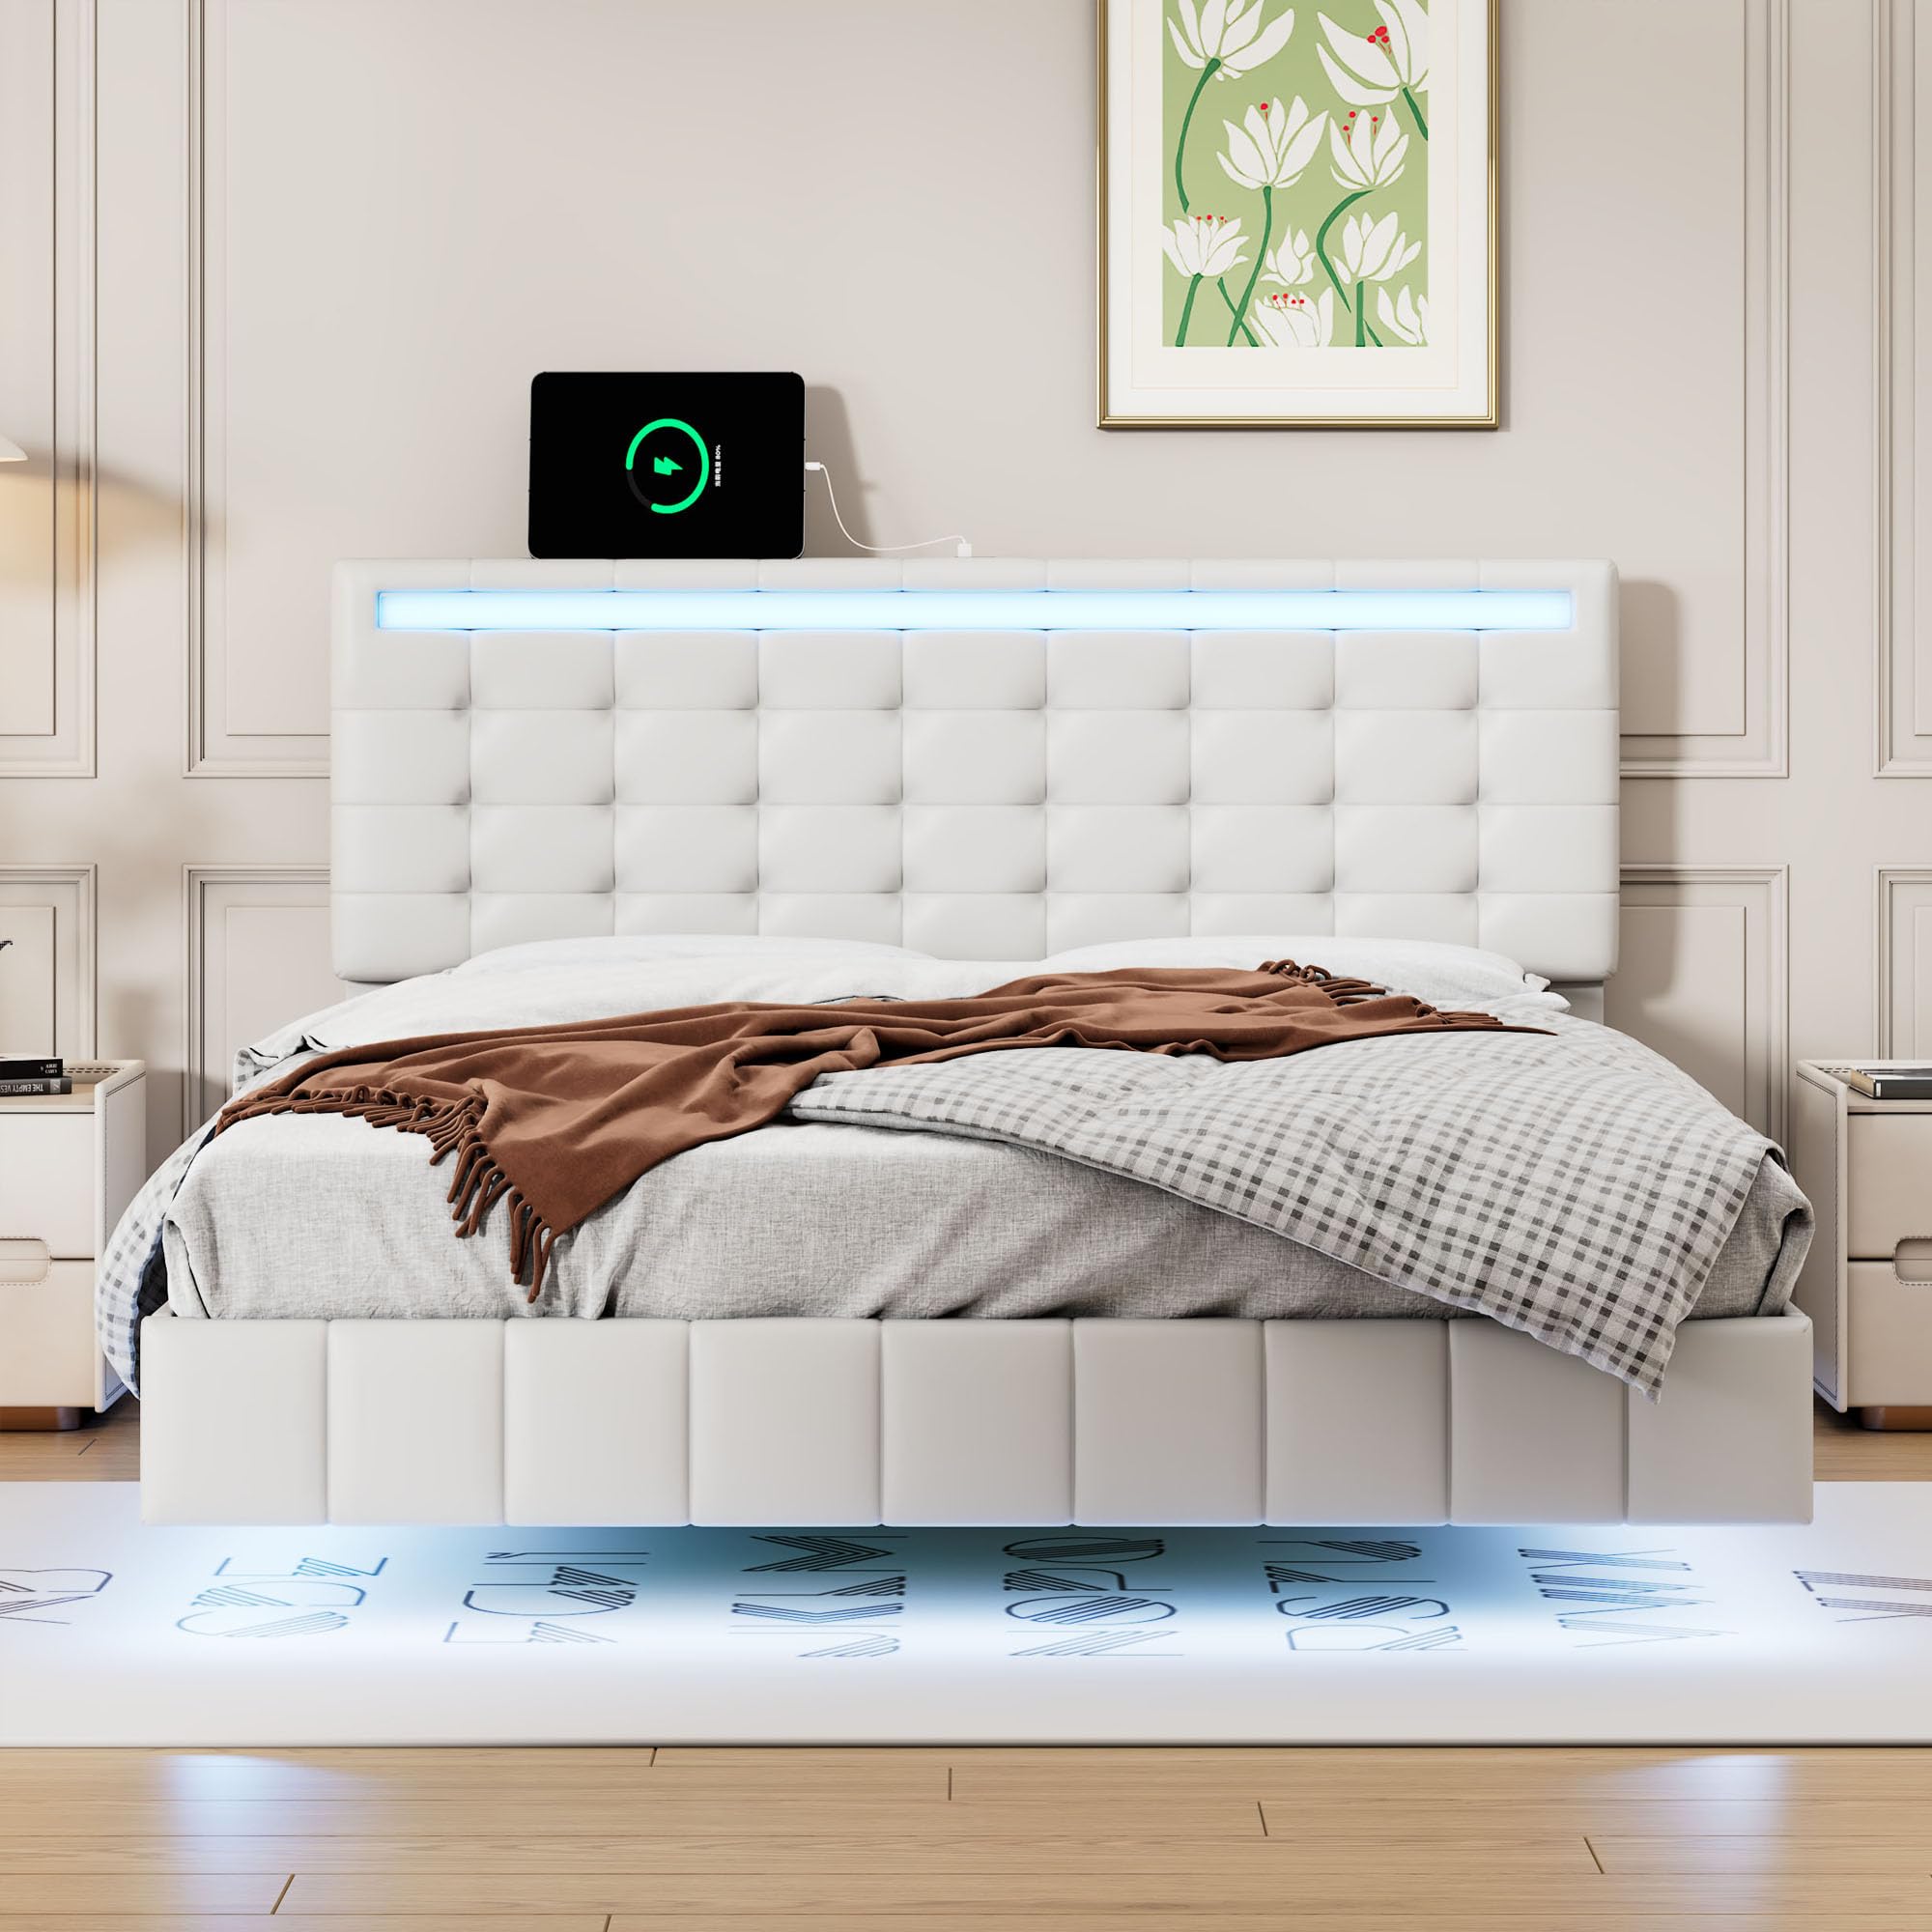 floating bed design